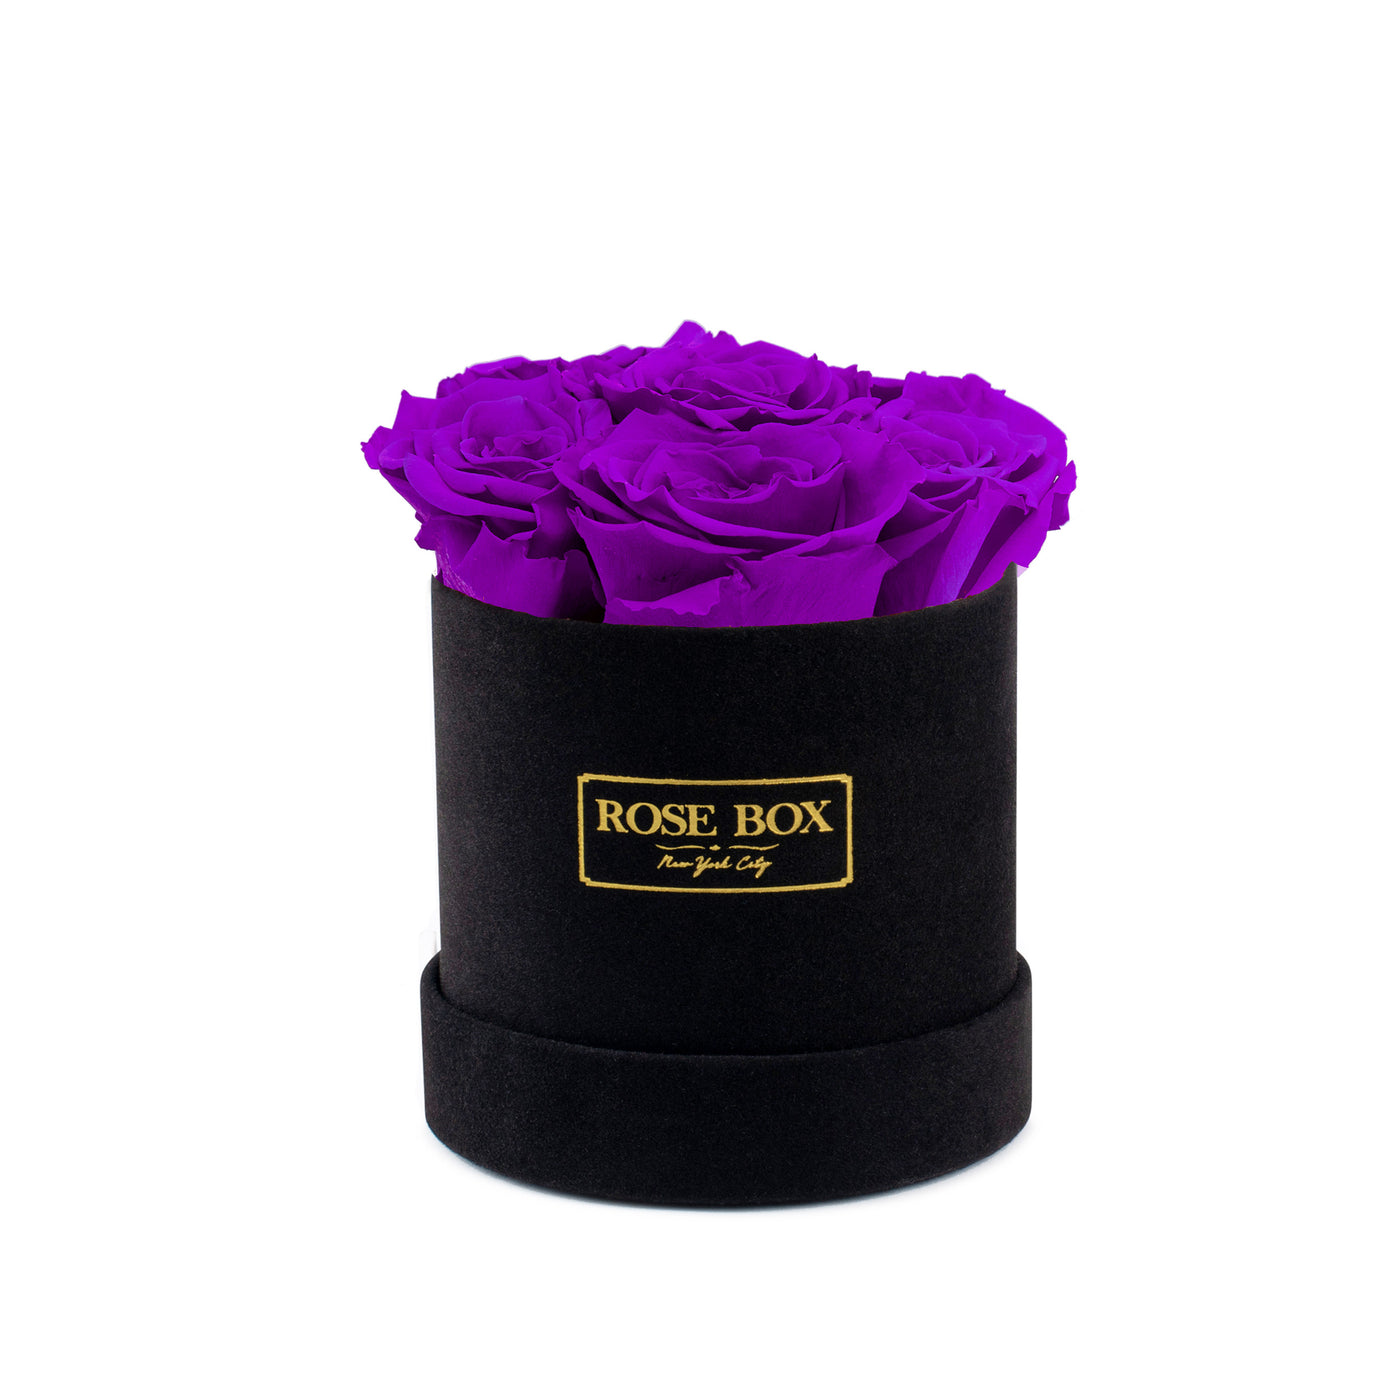 Mini Black Box with Royal Purple Roses